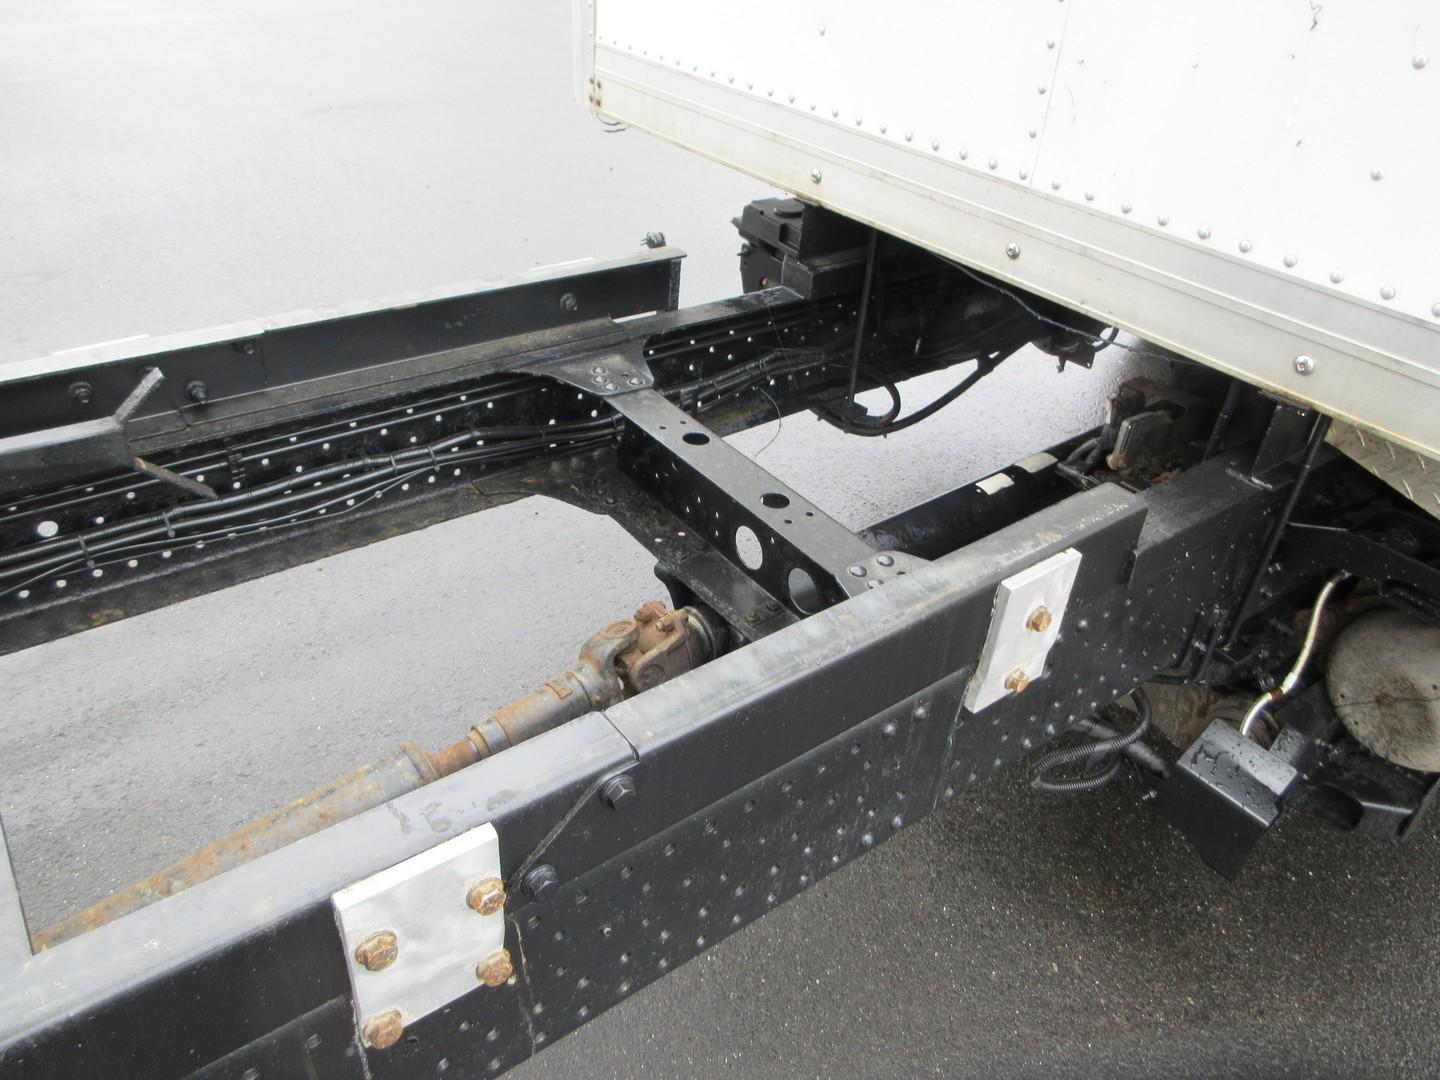 2014 Isuzu NPR S/A Dump Truck